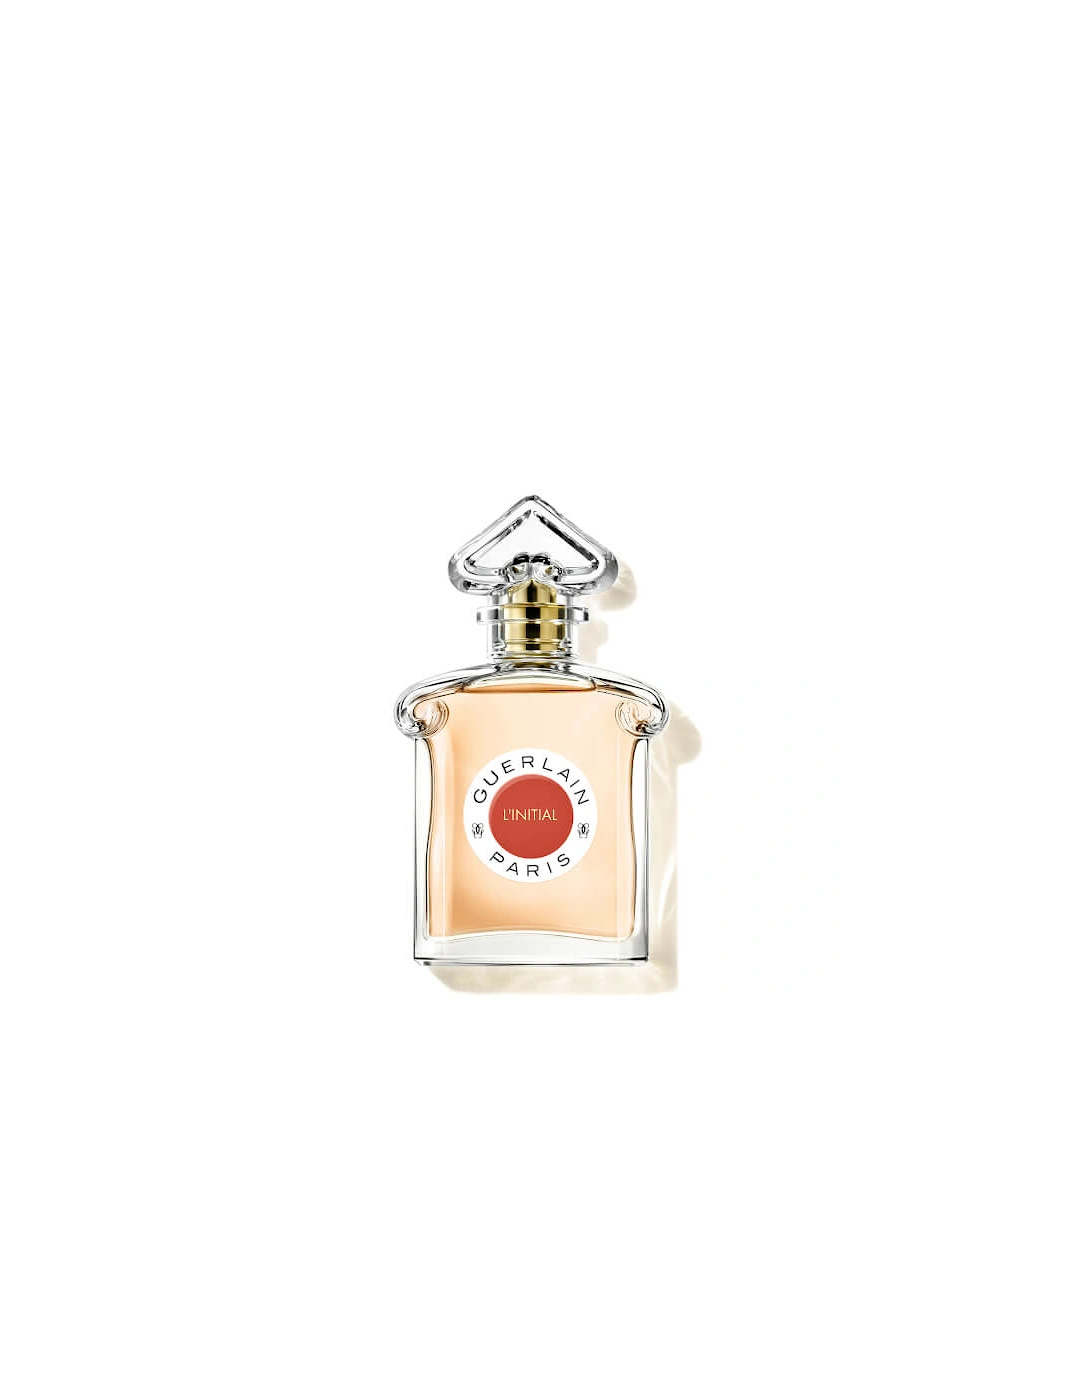 Les Légendaires L'Initial Eau De Parfum 75ml, 2 of 1